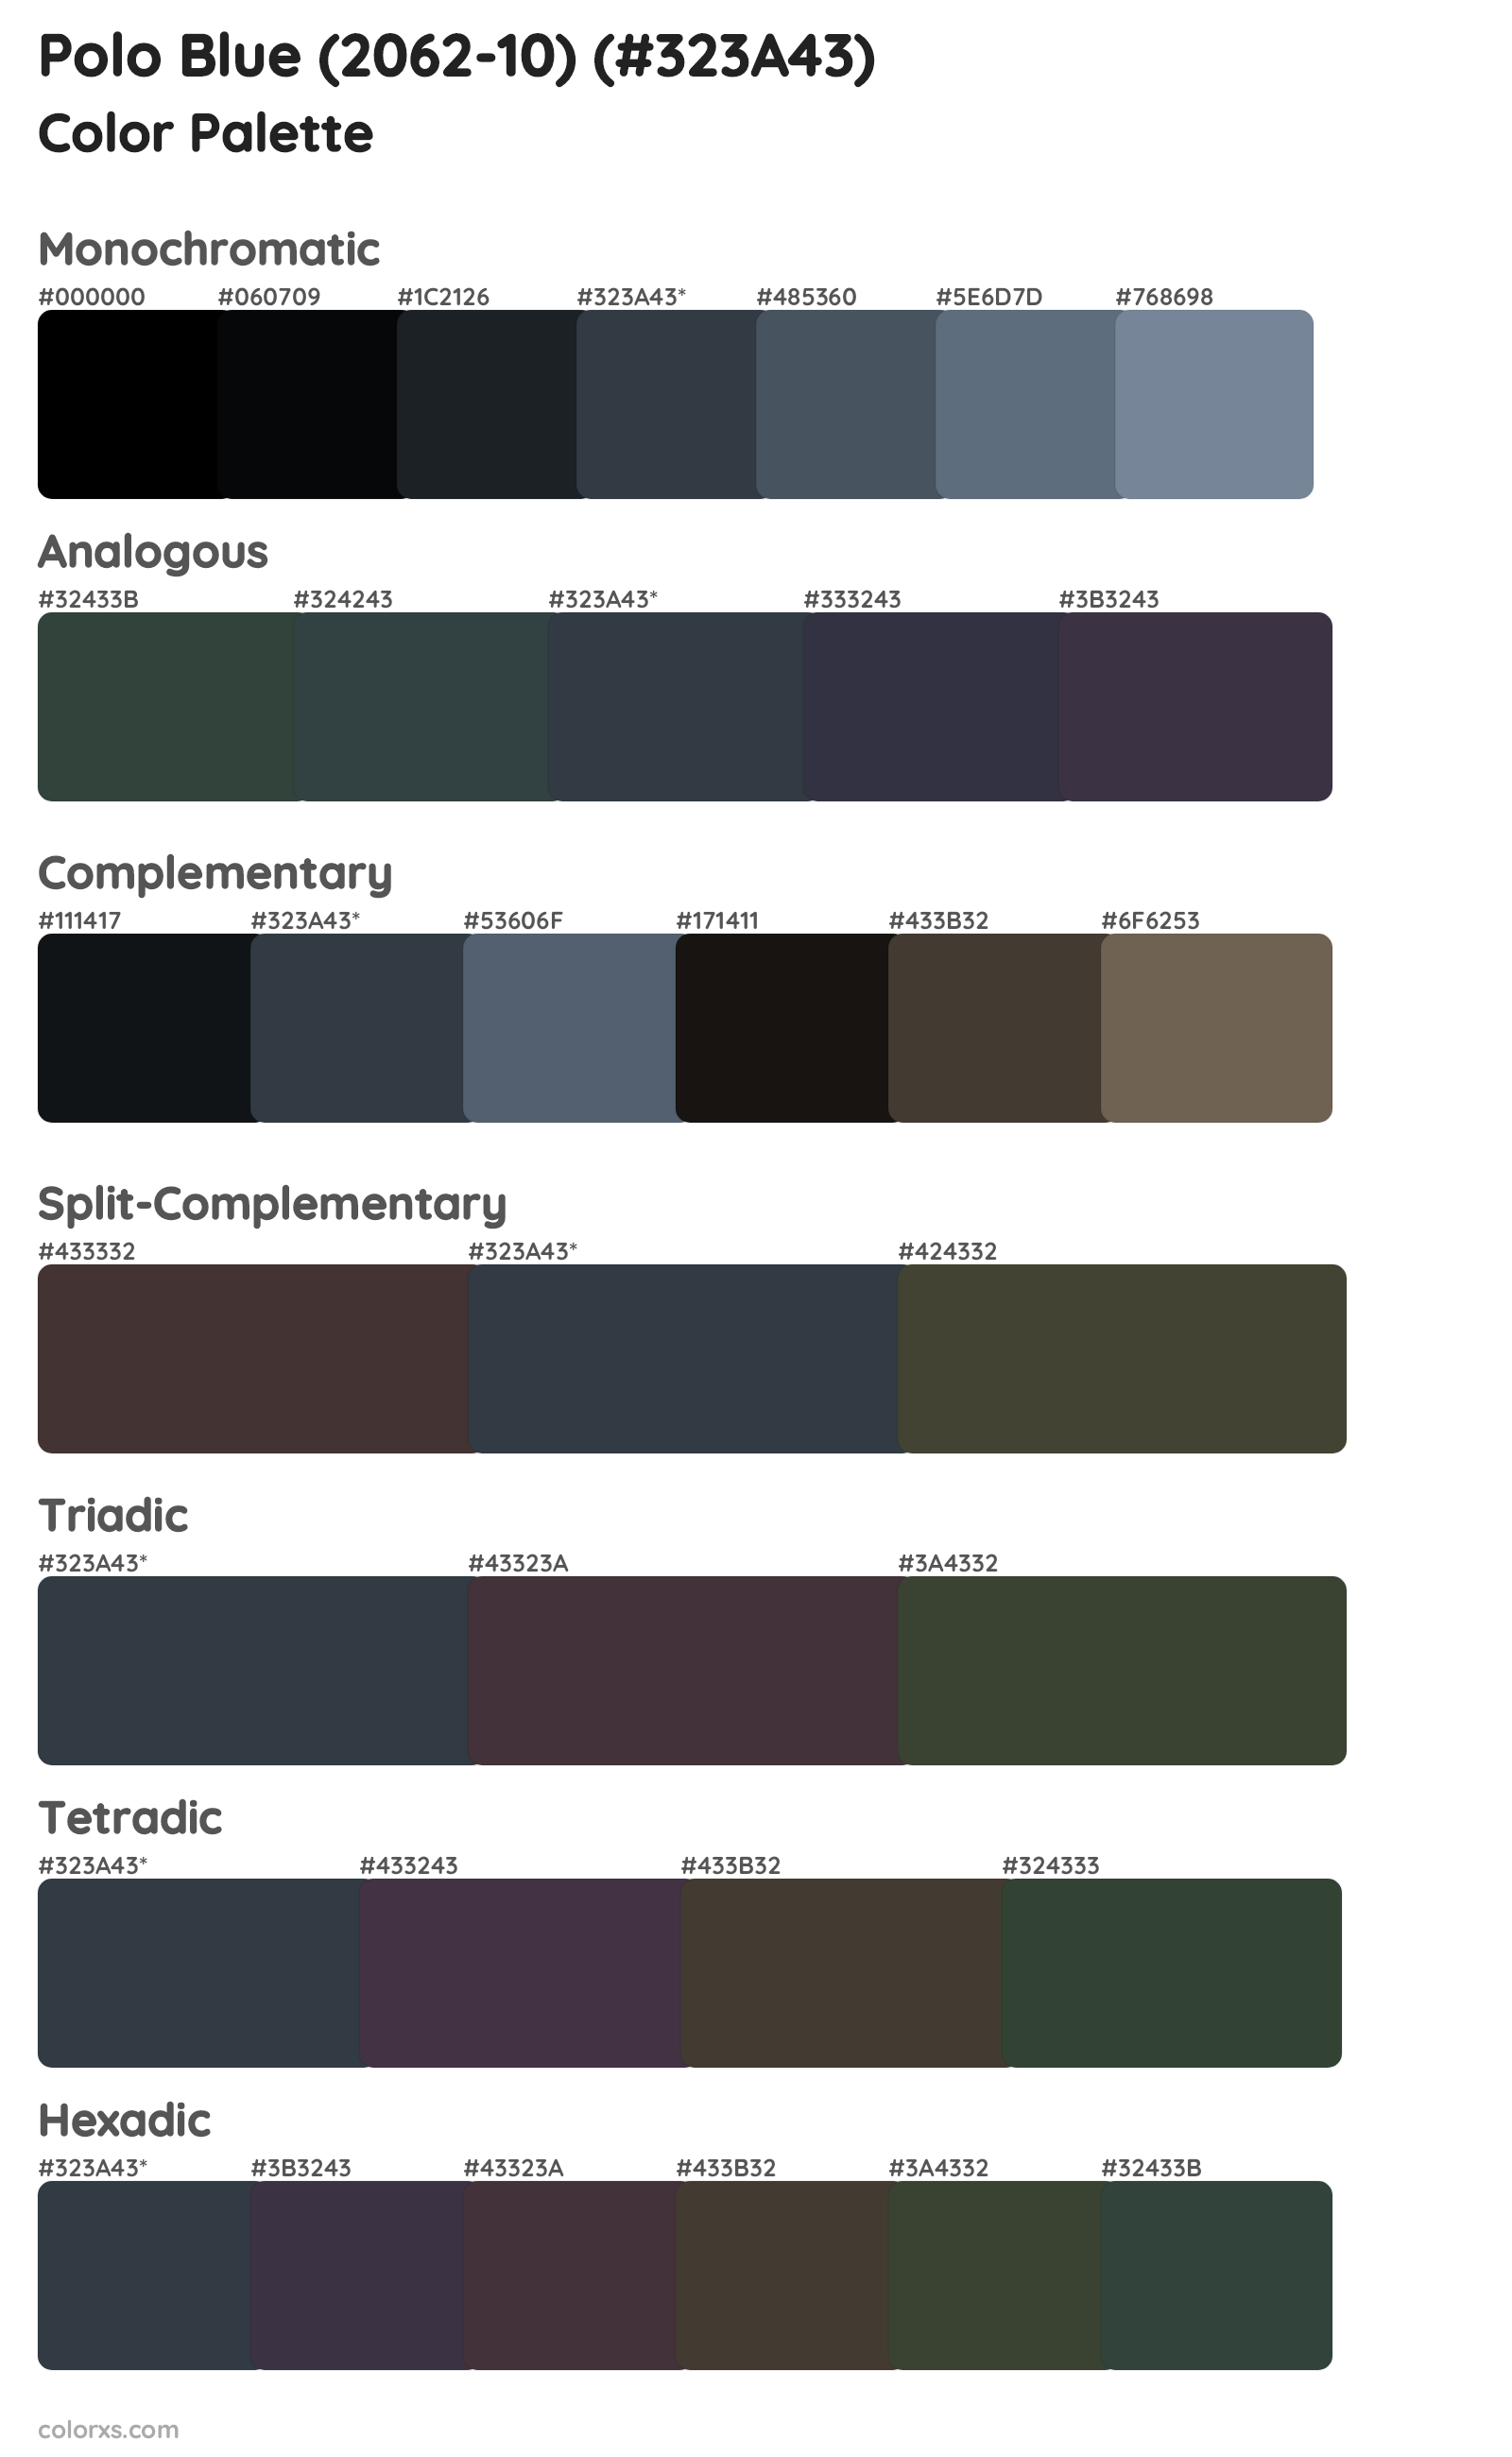 Polo Blue (2062-10) Color Scheme Palettes